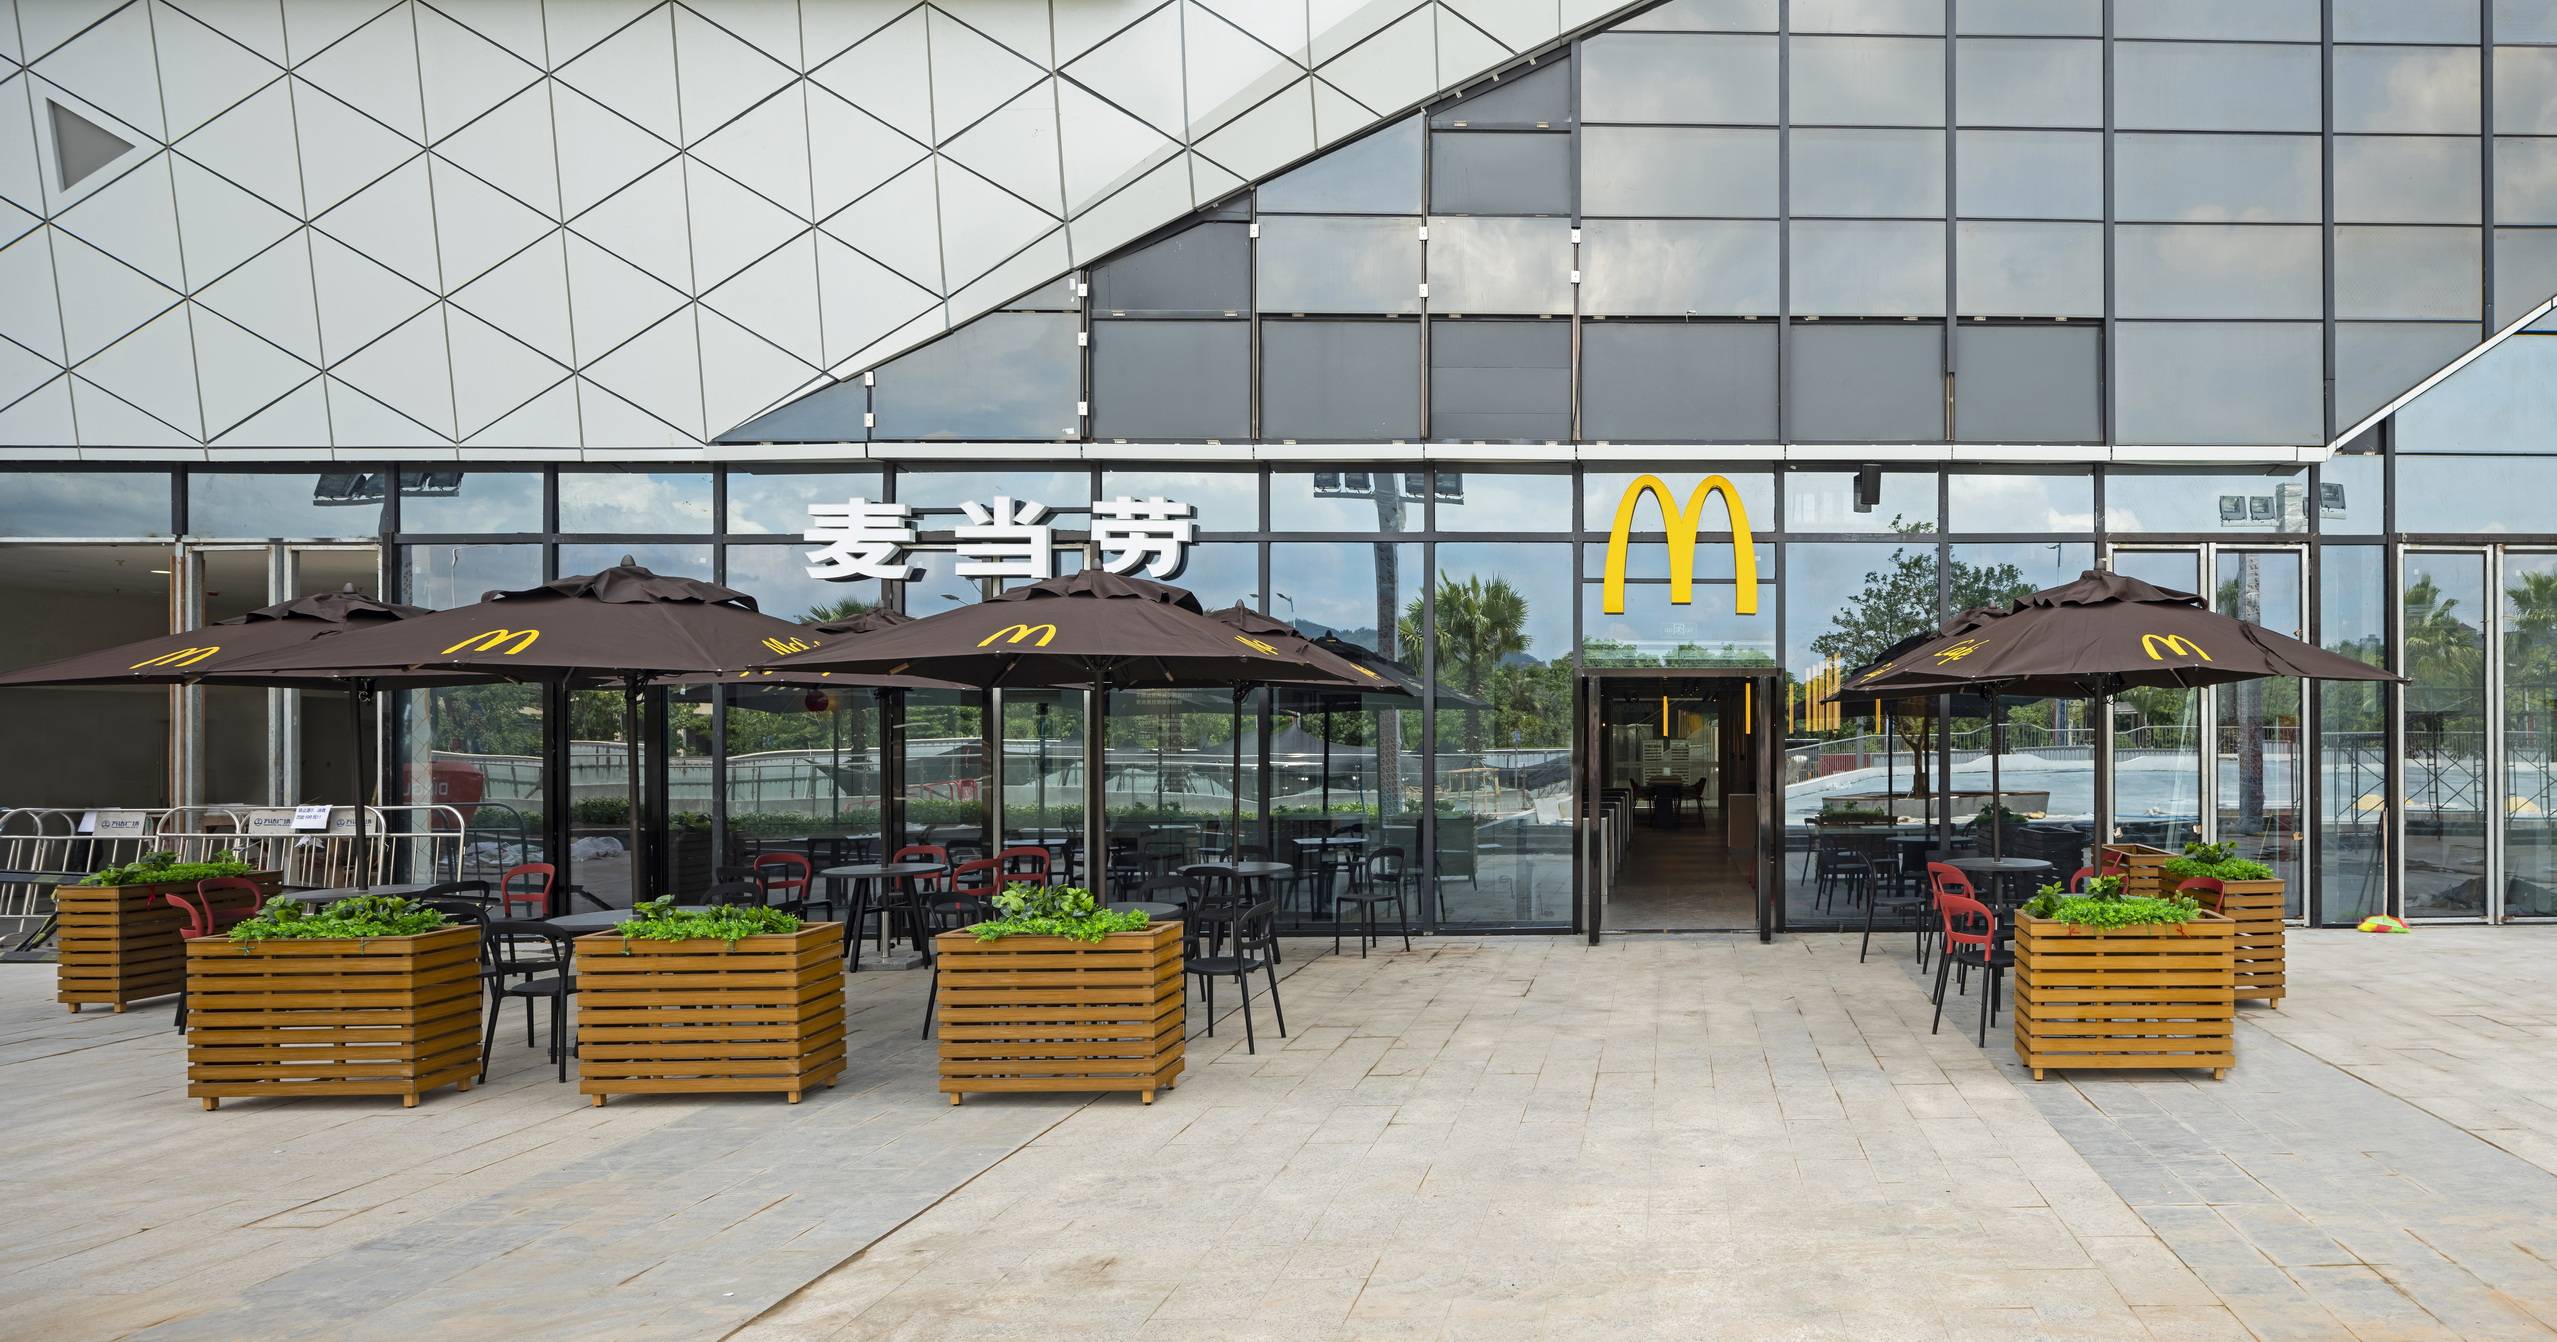 面积超过360平米,餐厅采用麦当劳全球设计的ray设计风格